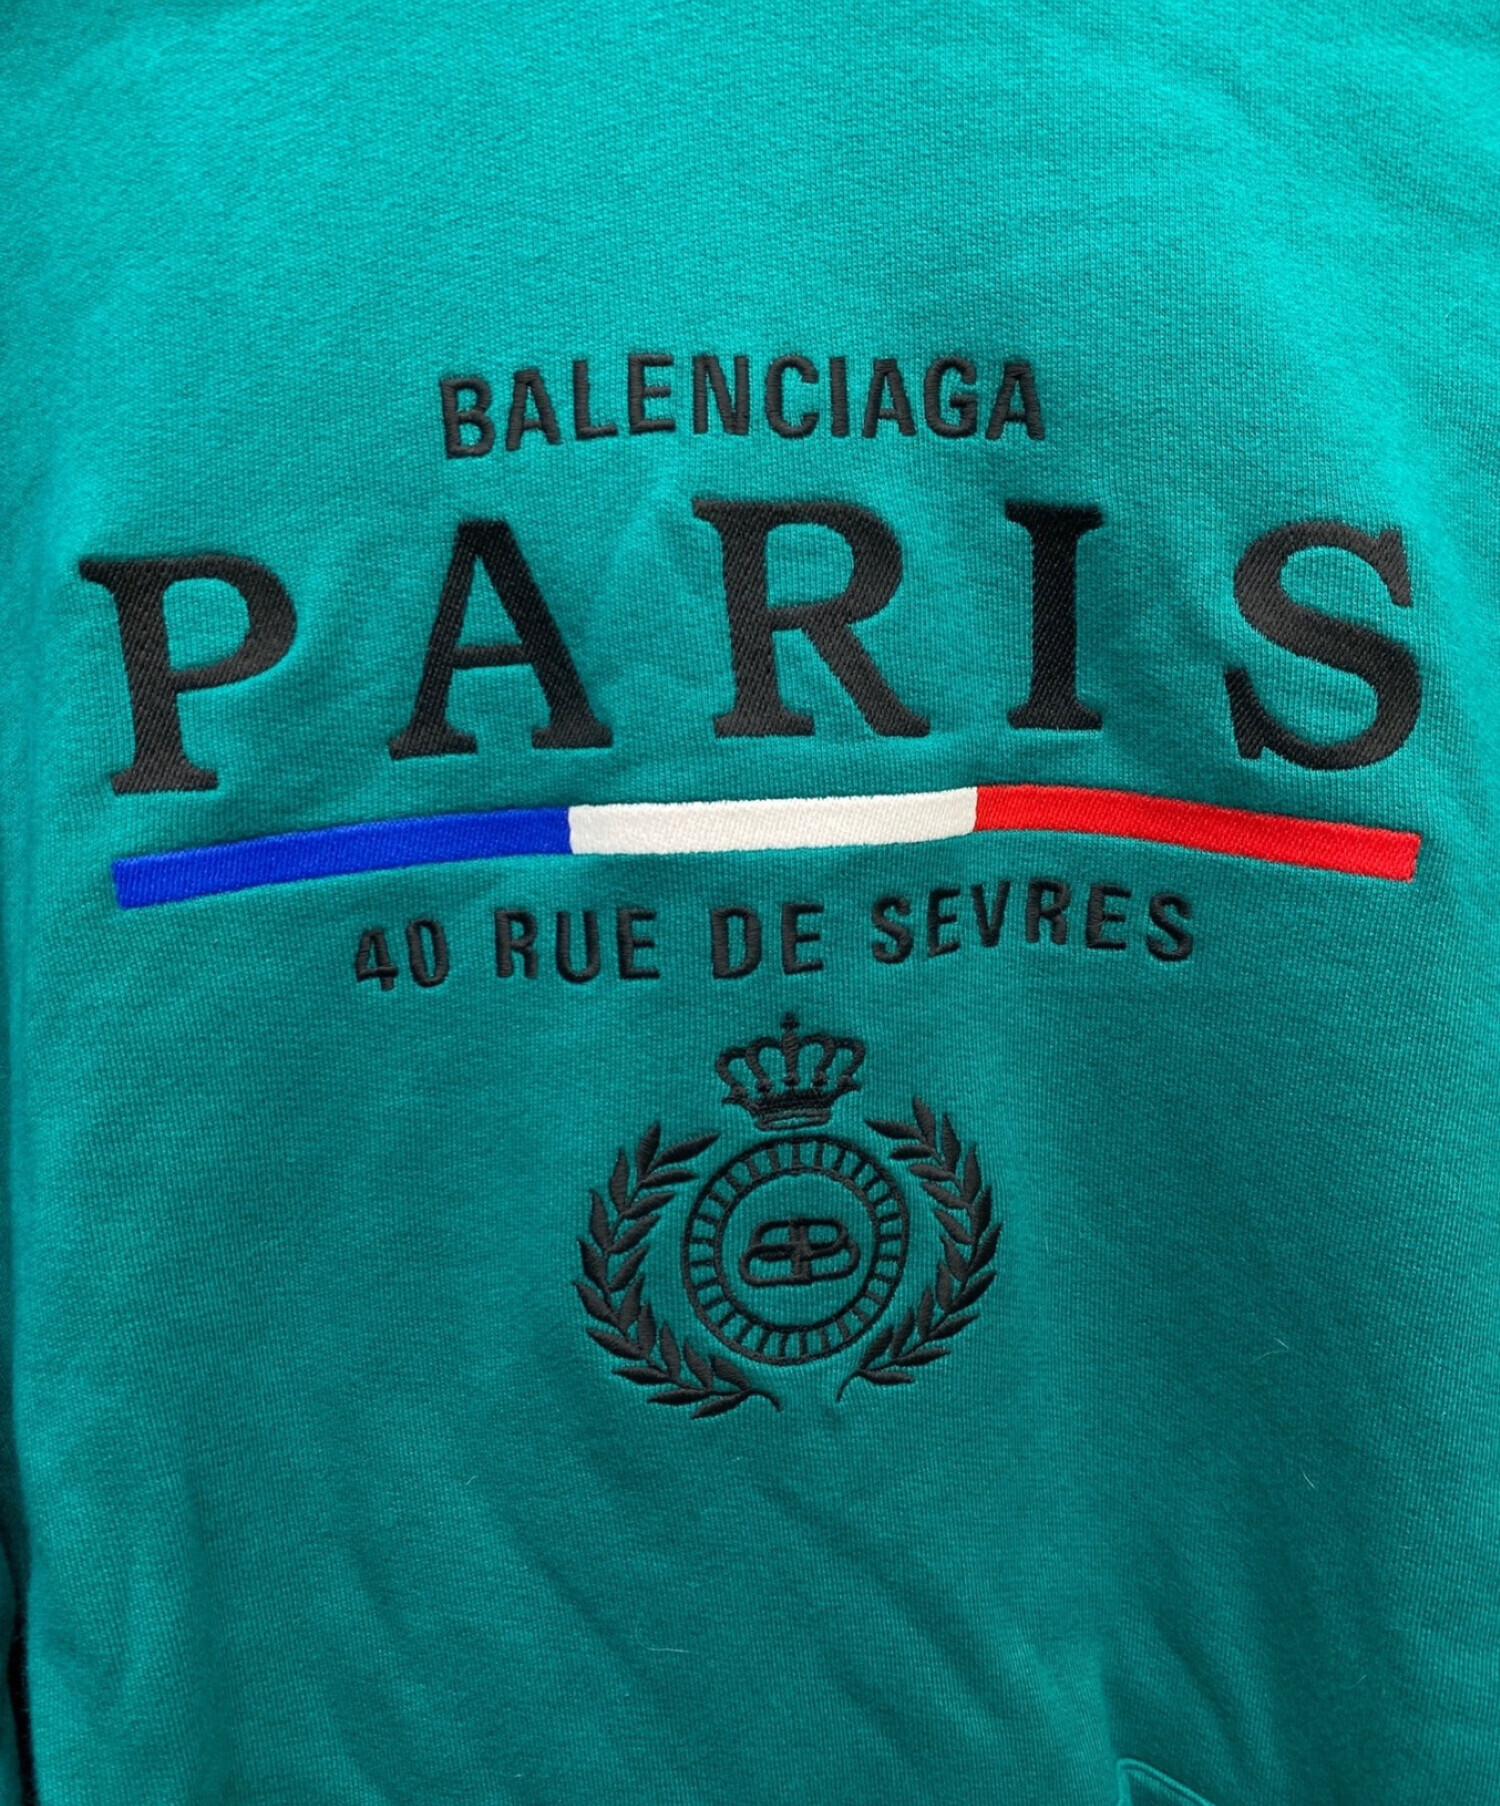 BALENCIAGA (バレンシアガ) PARISロゴスウェットパーカー グリーン サイズ:XS